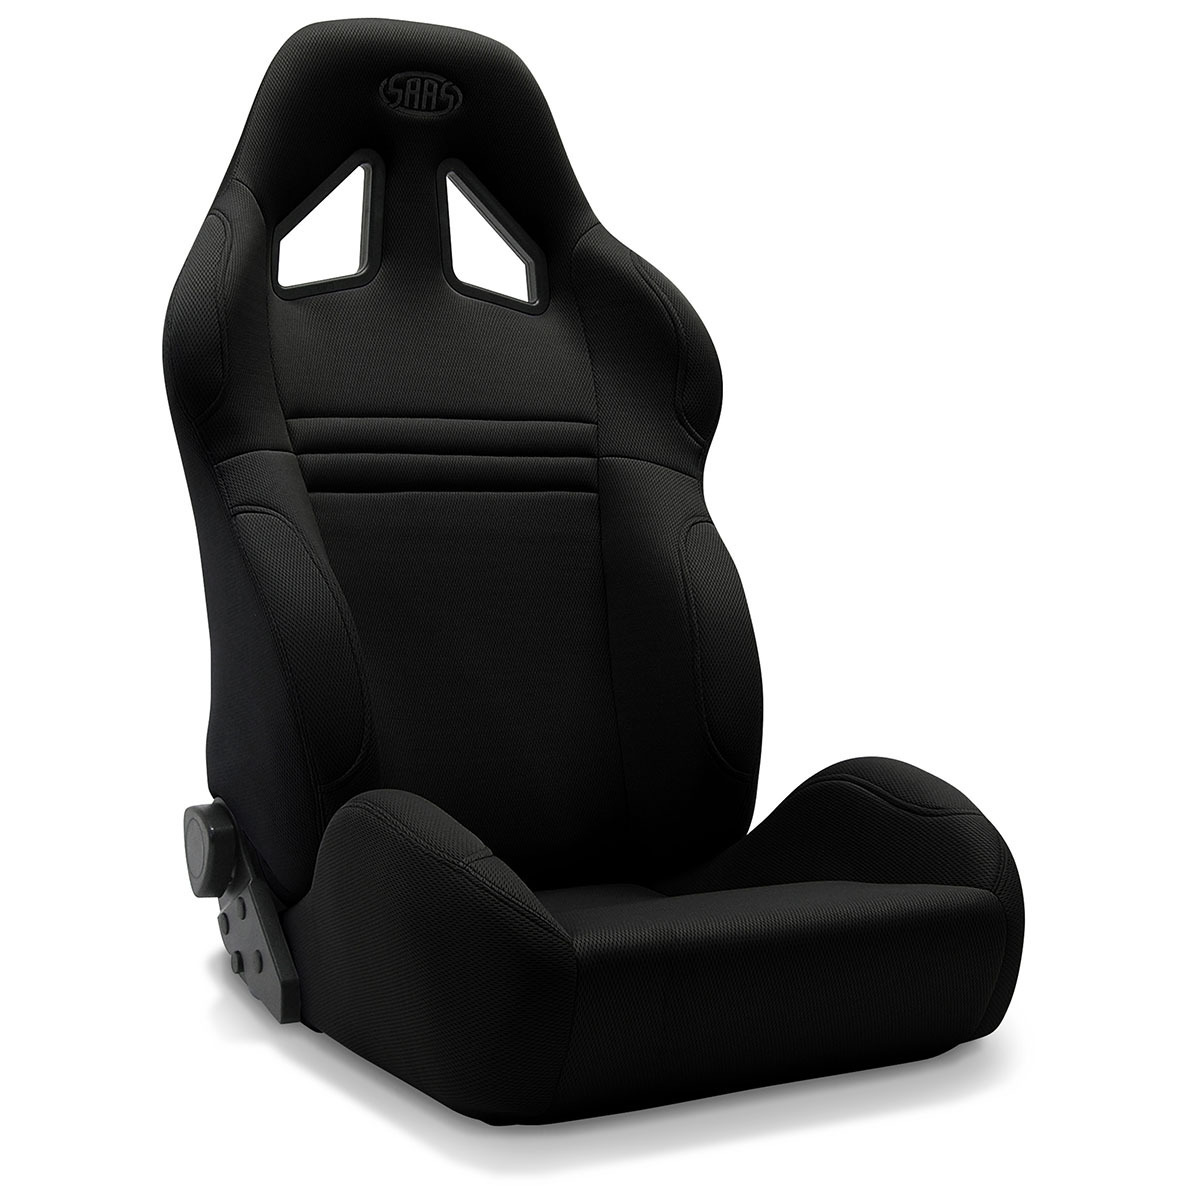 SAAS Kombat Seat Dual Recline Black ADR Compliant